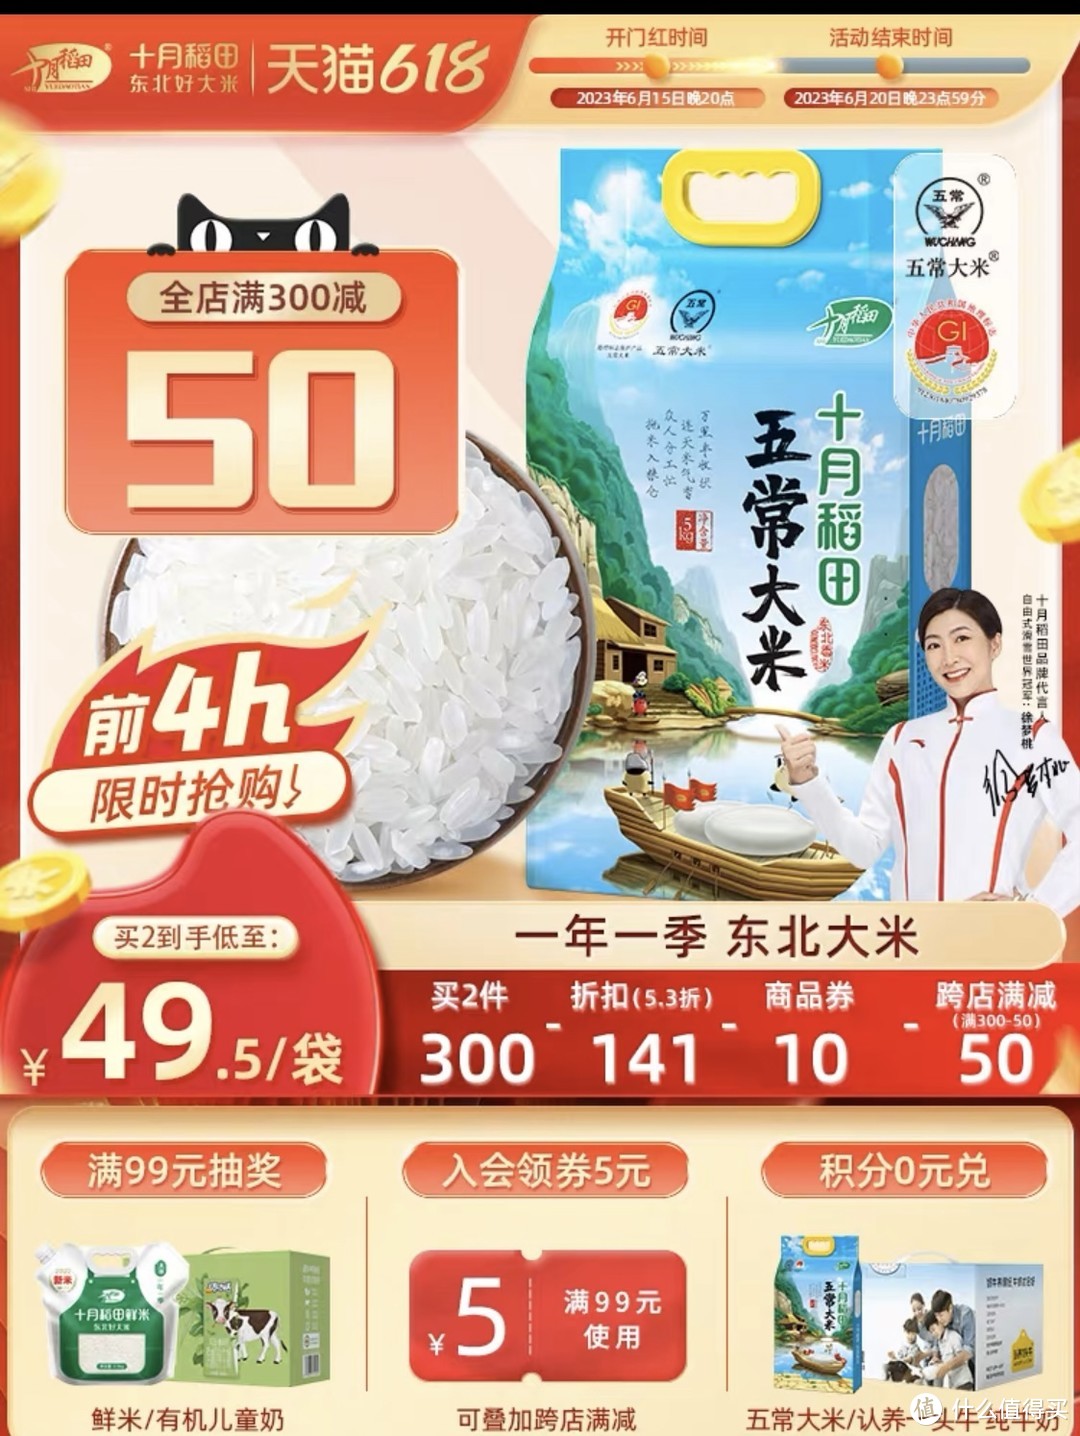 今晚八点天猫超市十月稻田大米好价开抢！